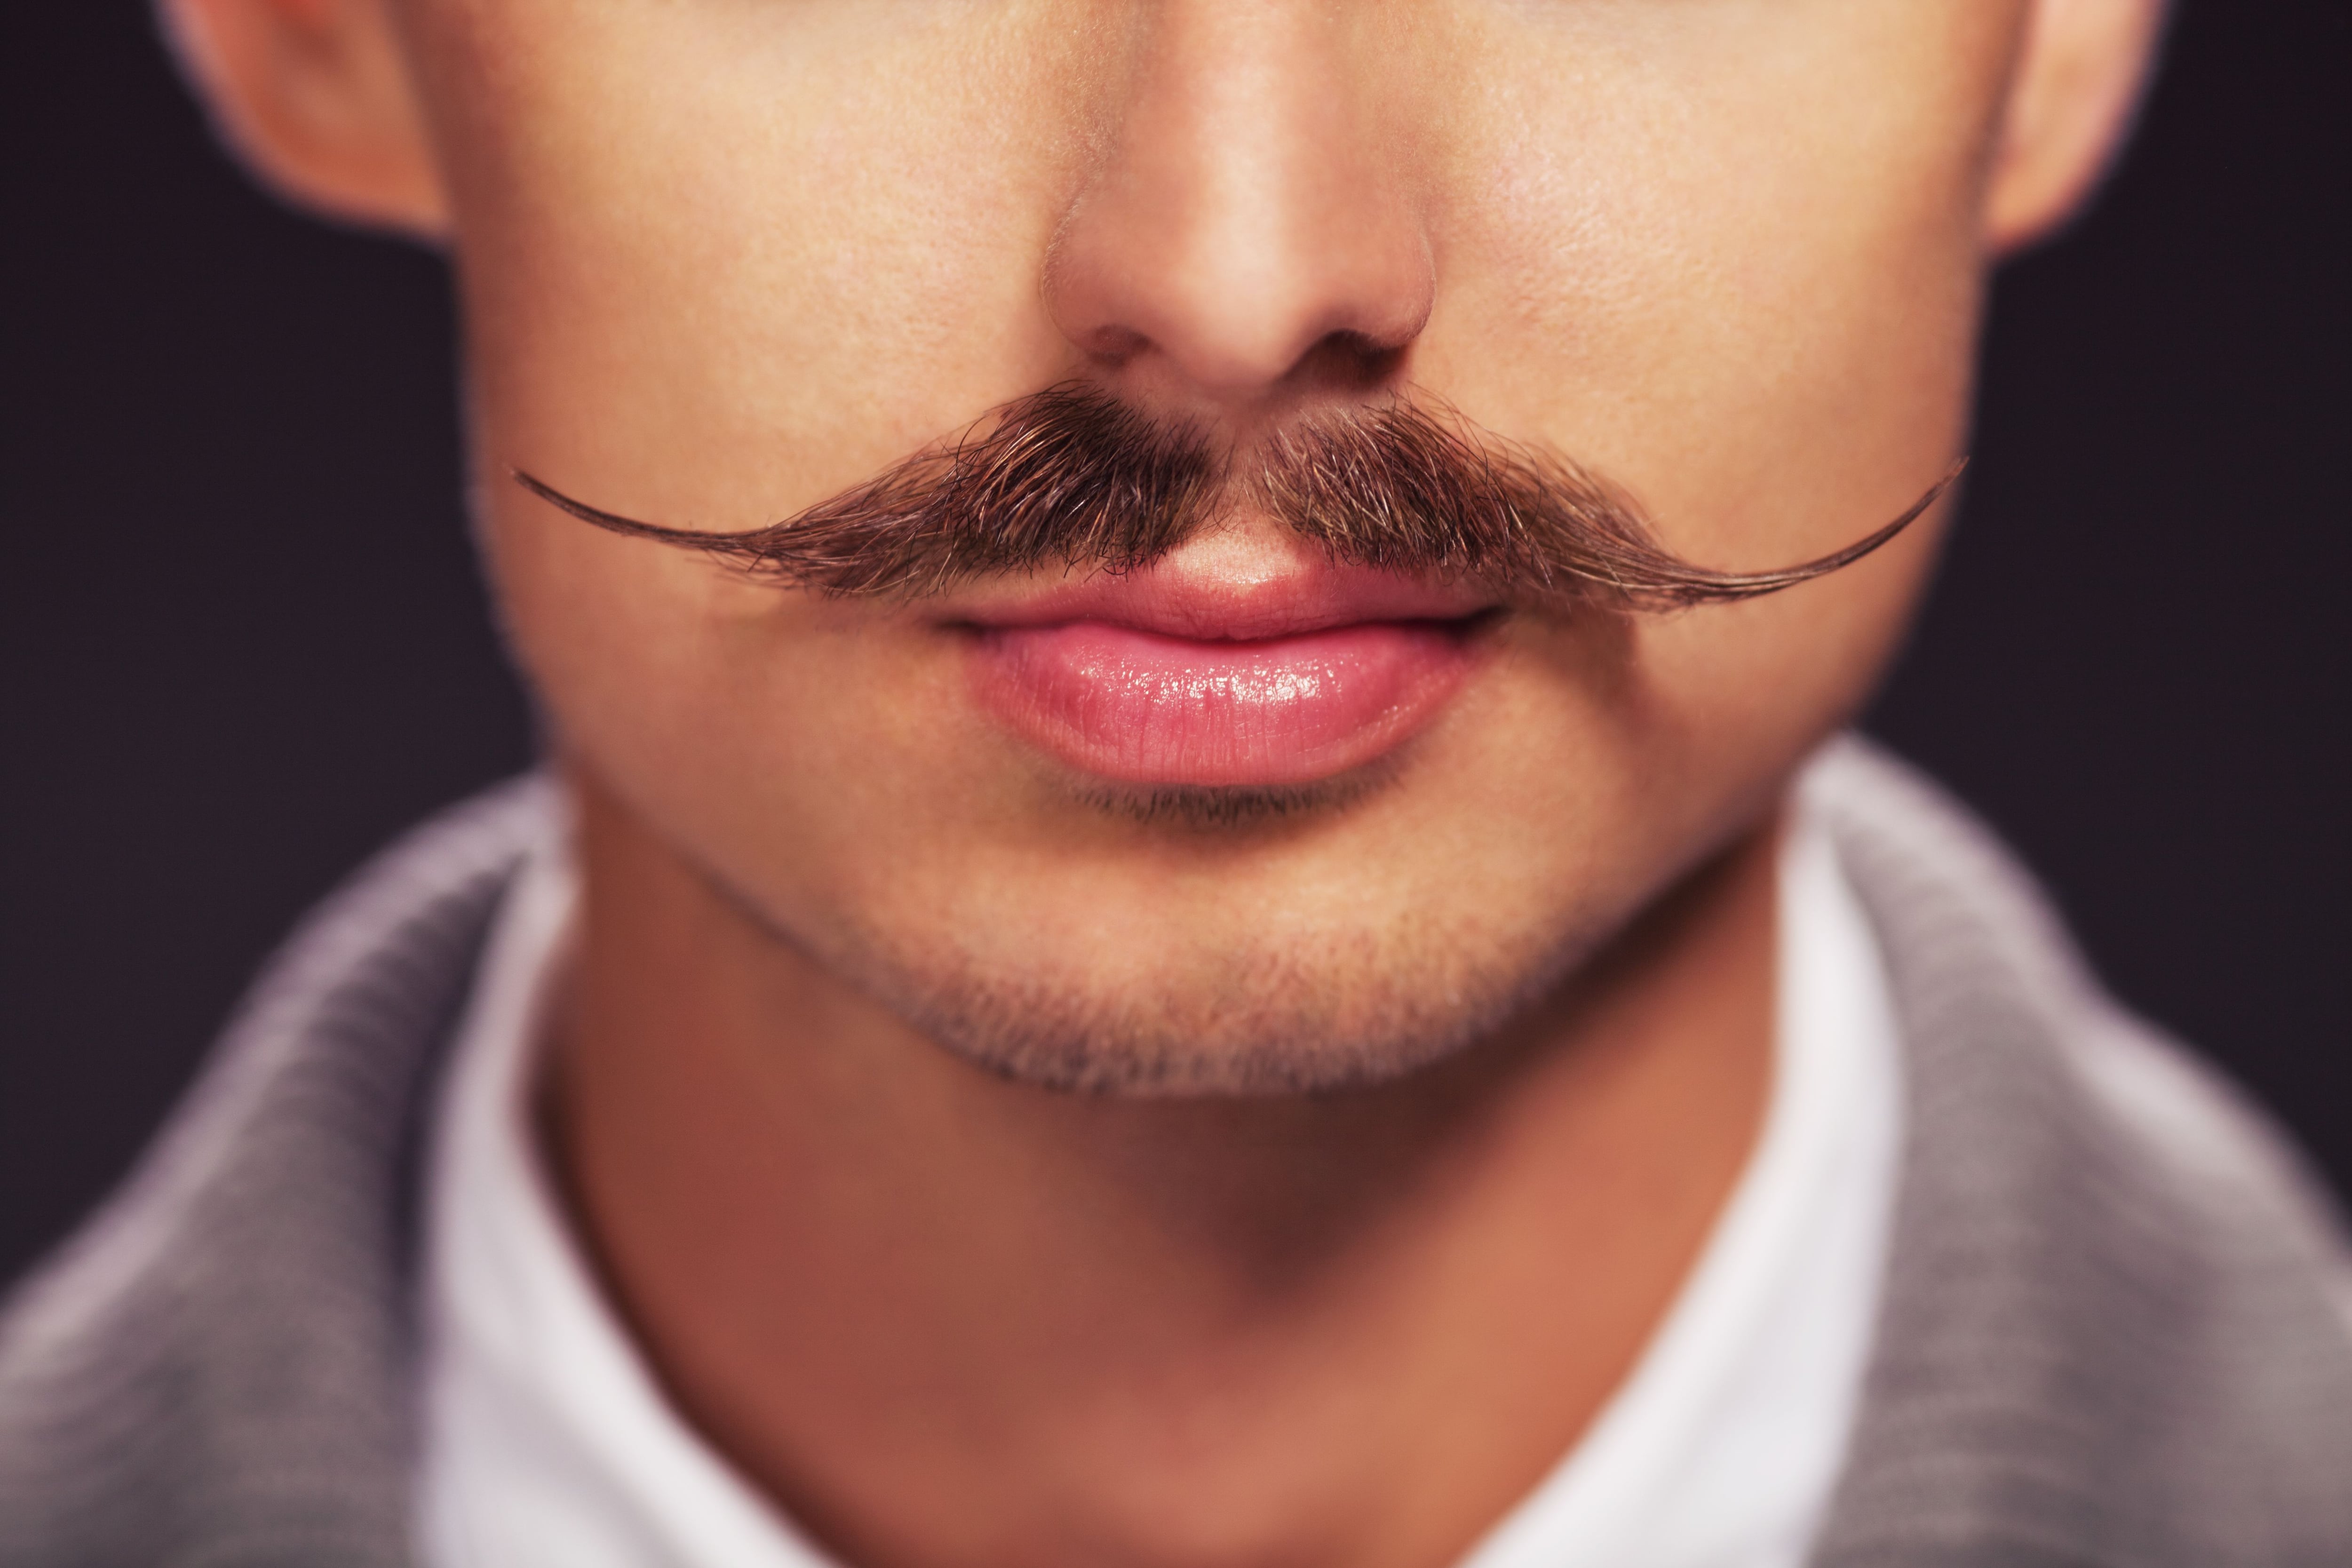 El bigote perfilado, en algunos casos, es señal de prolijidad en una persona, de acuerdo a lo planteado por el barbero Adrían Centi